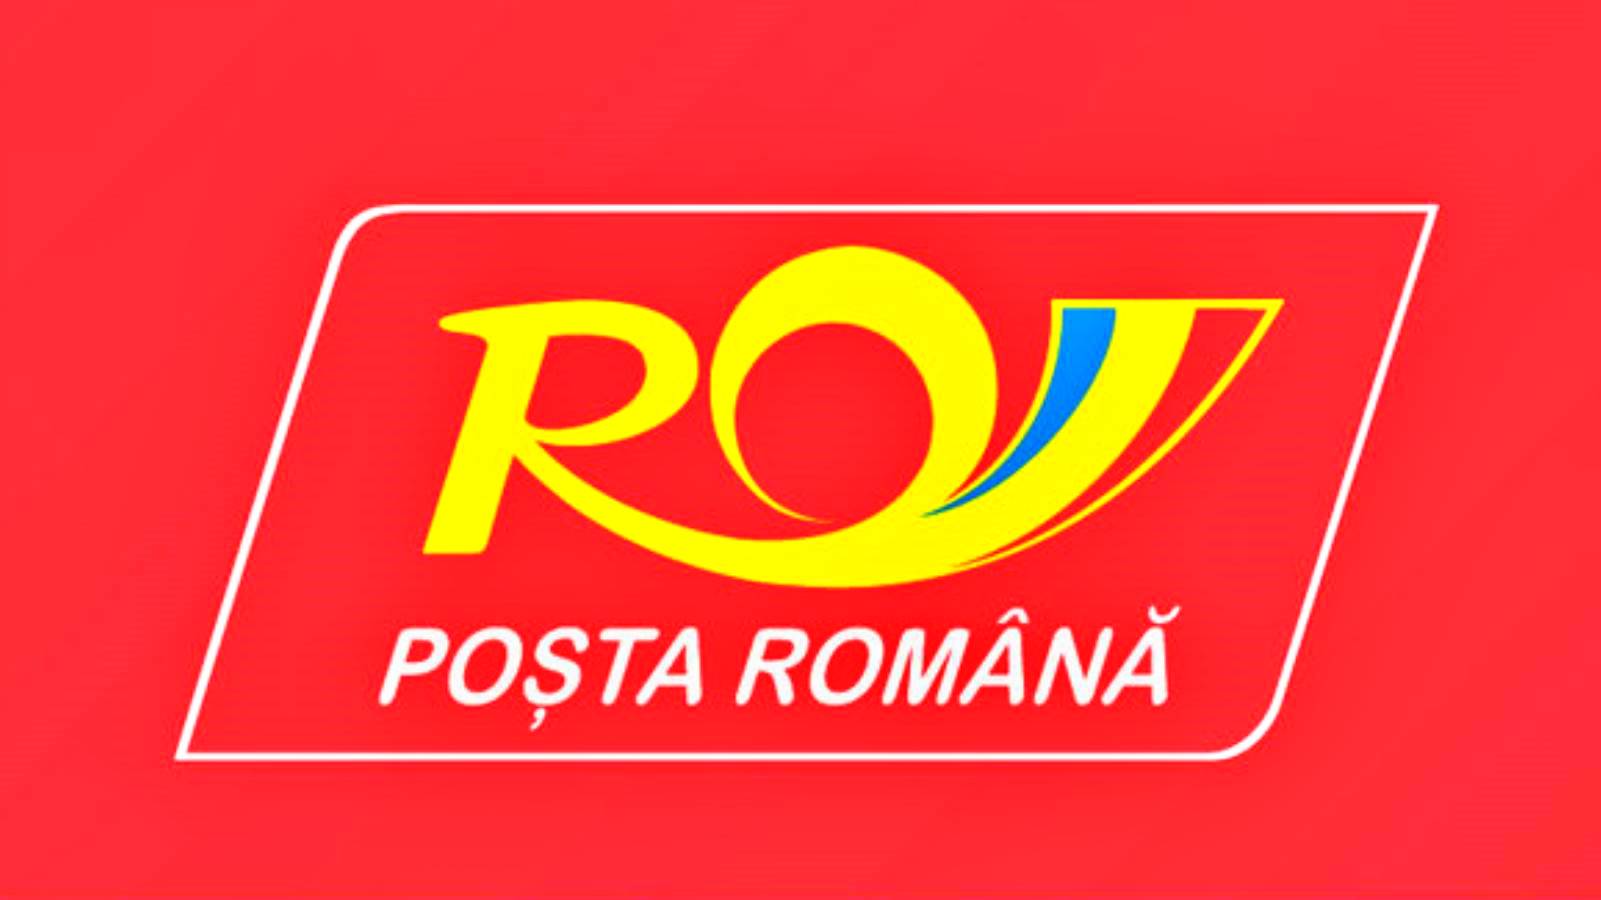 Romanian postitoimituksen kirjallinen vahvistus